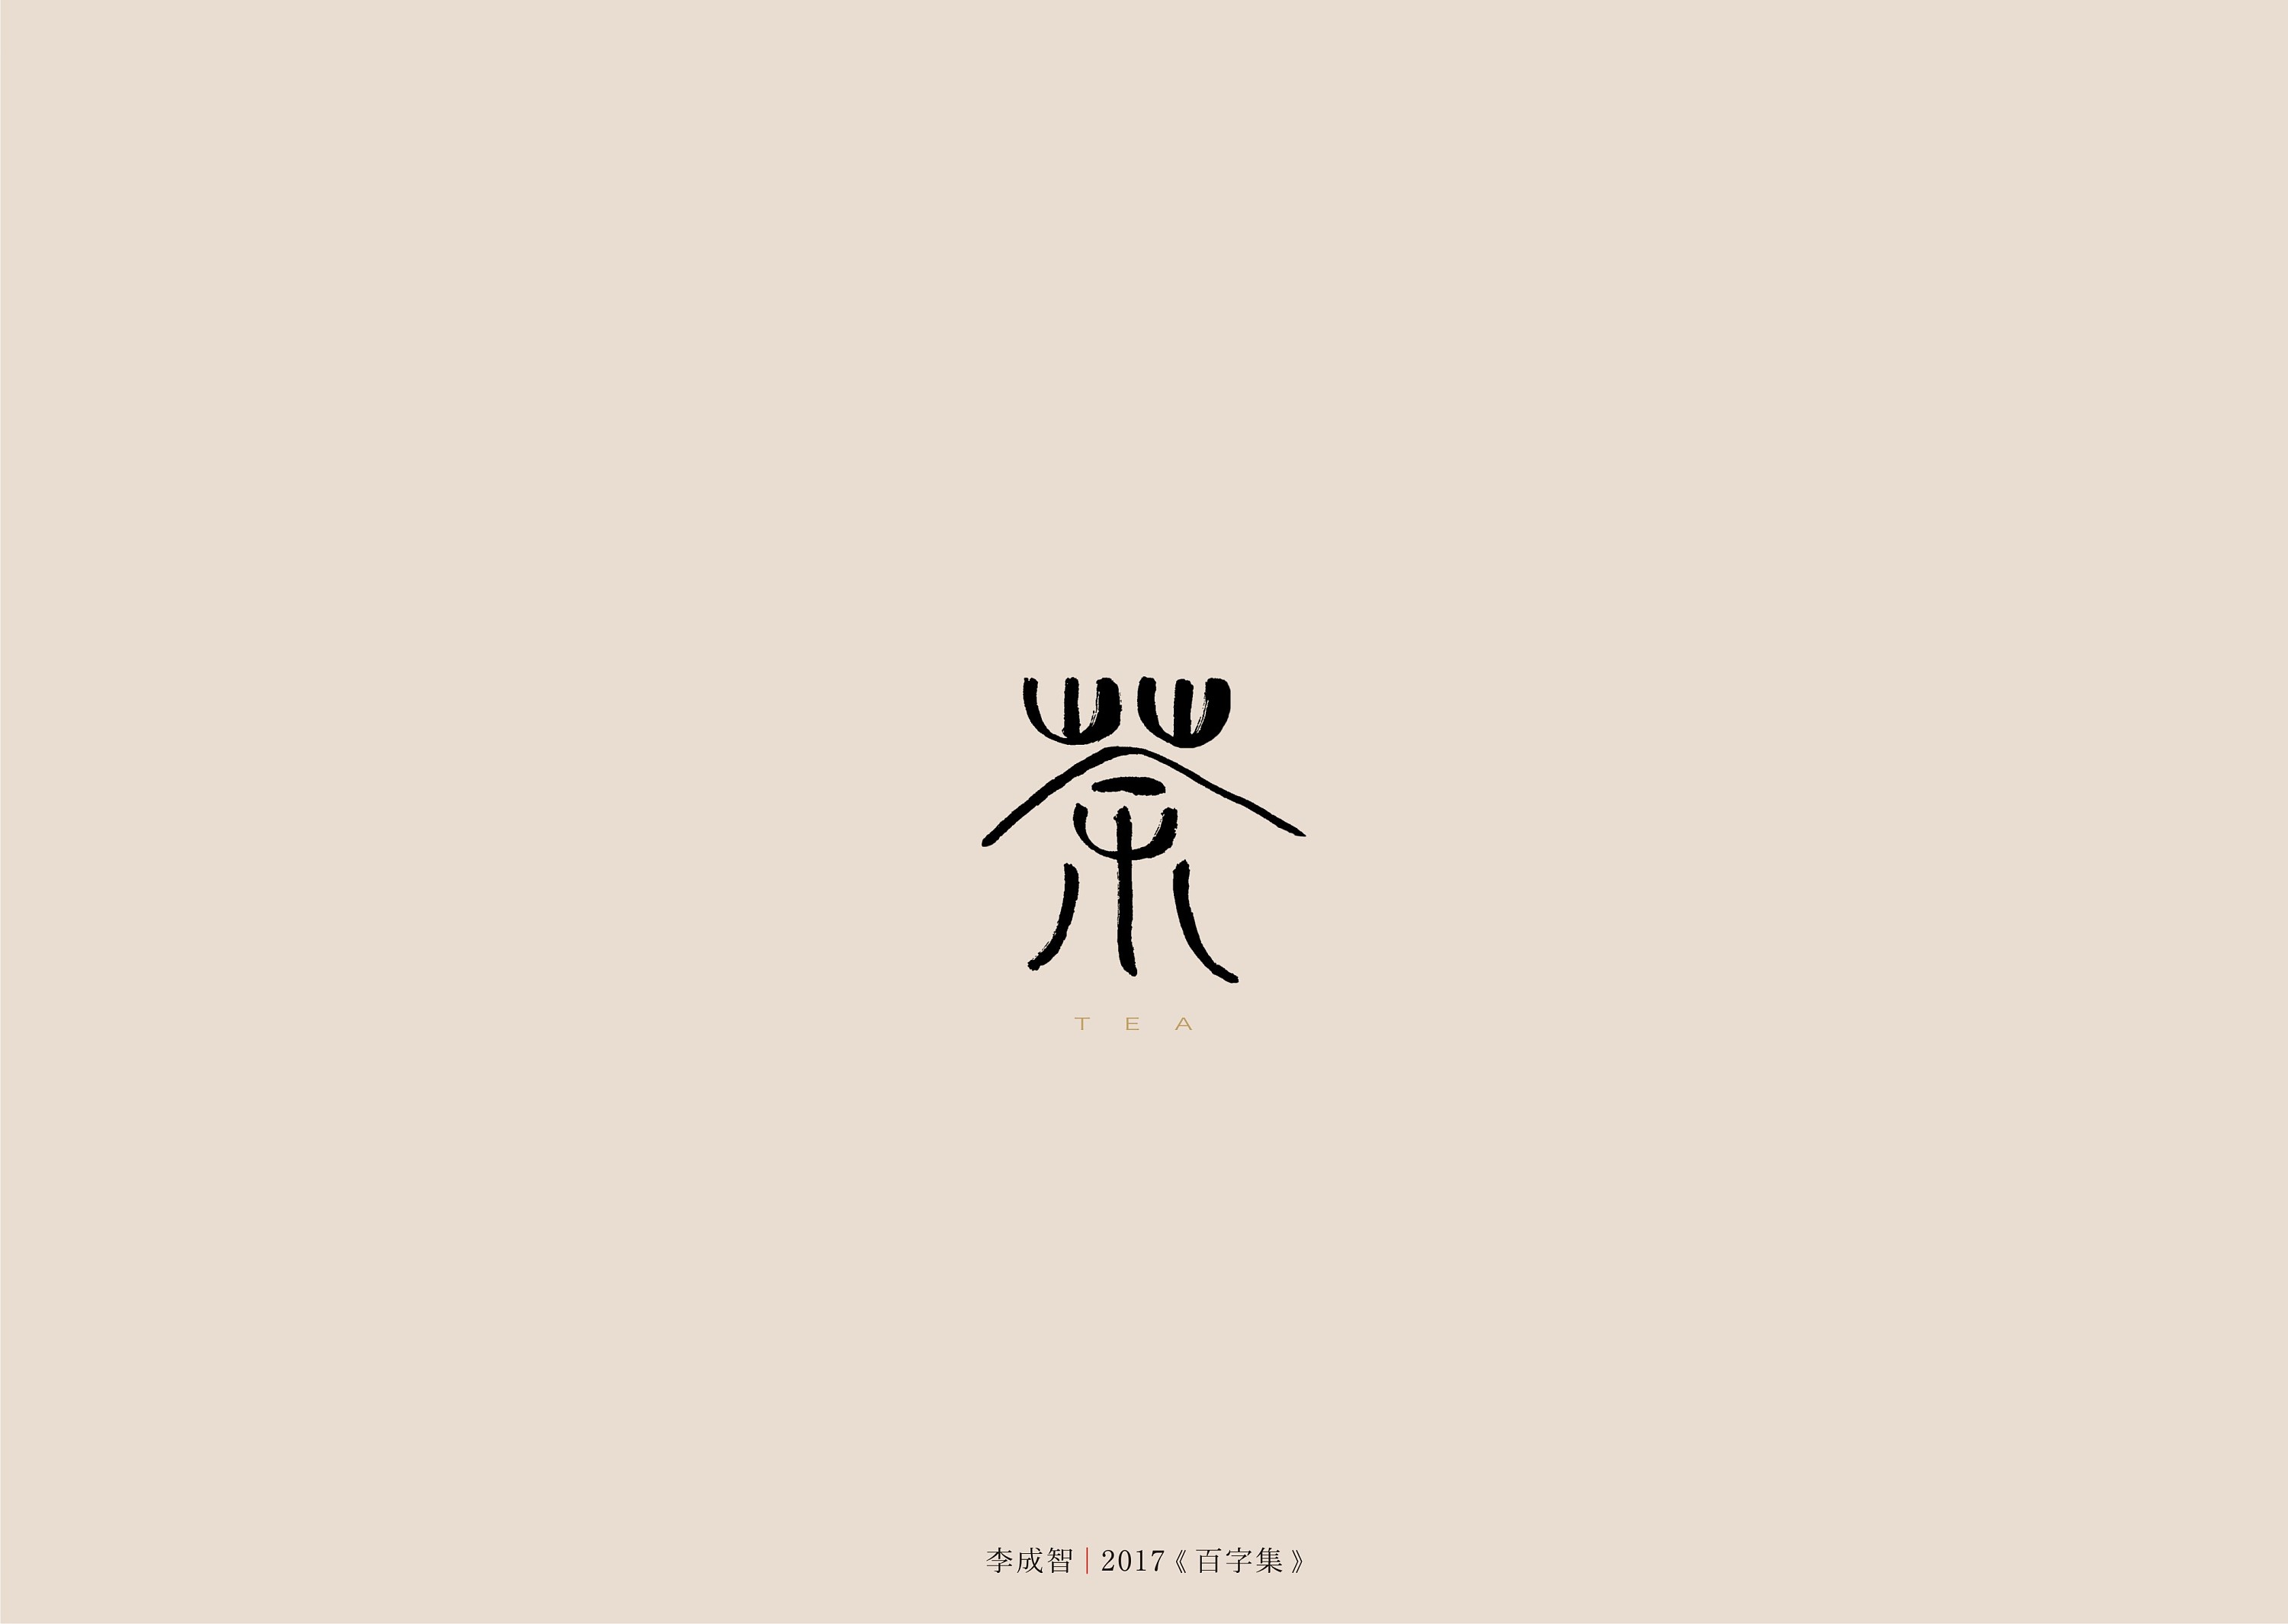 创意汉字图形设计作业图片